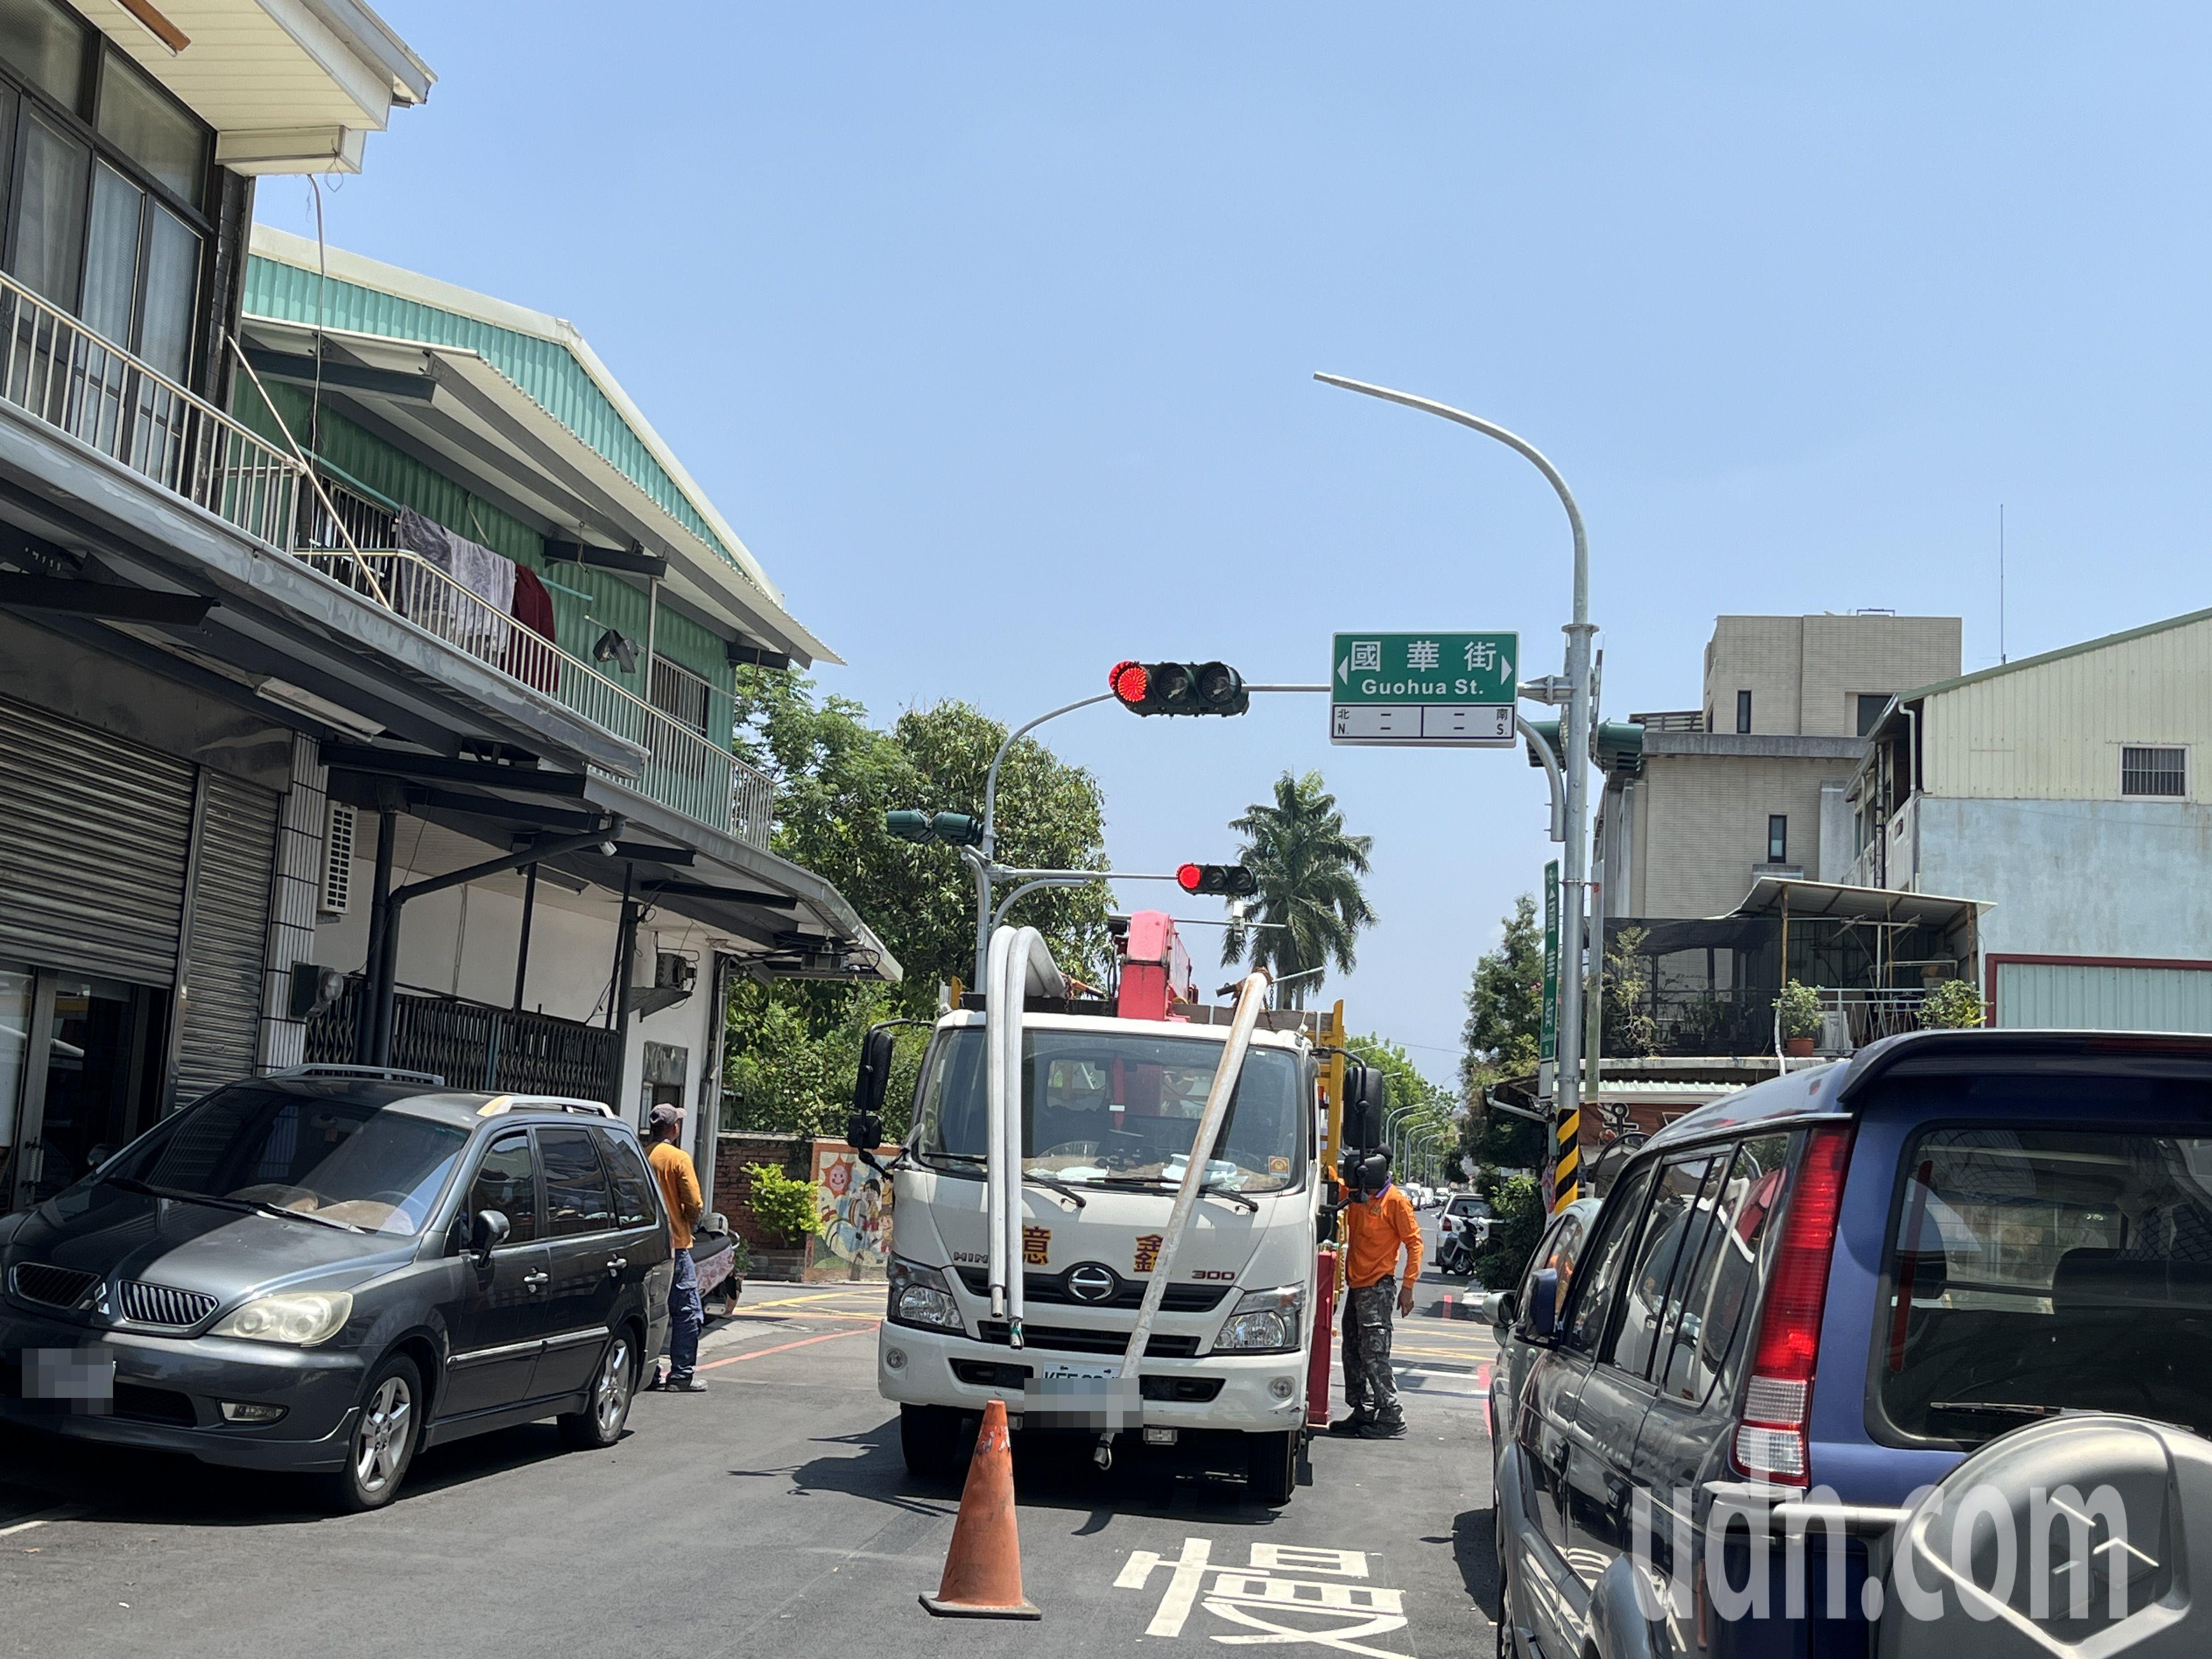 嘉义市崇文街与国华街口上午进行红绿灯测试。记者李宗祐／摄影